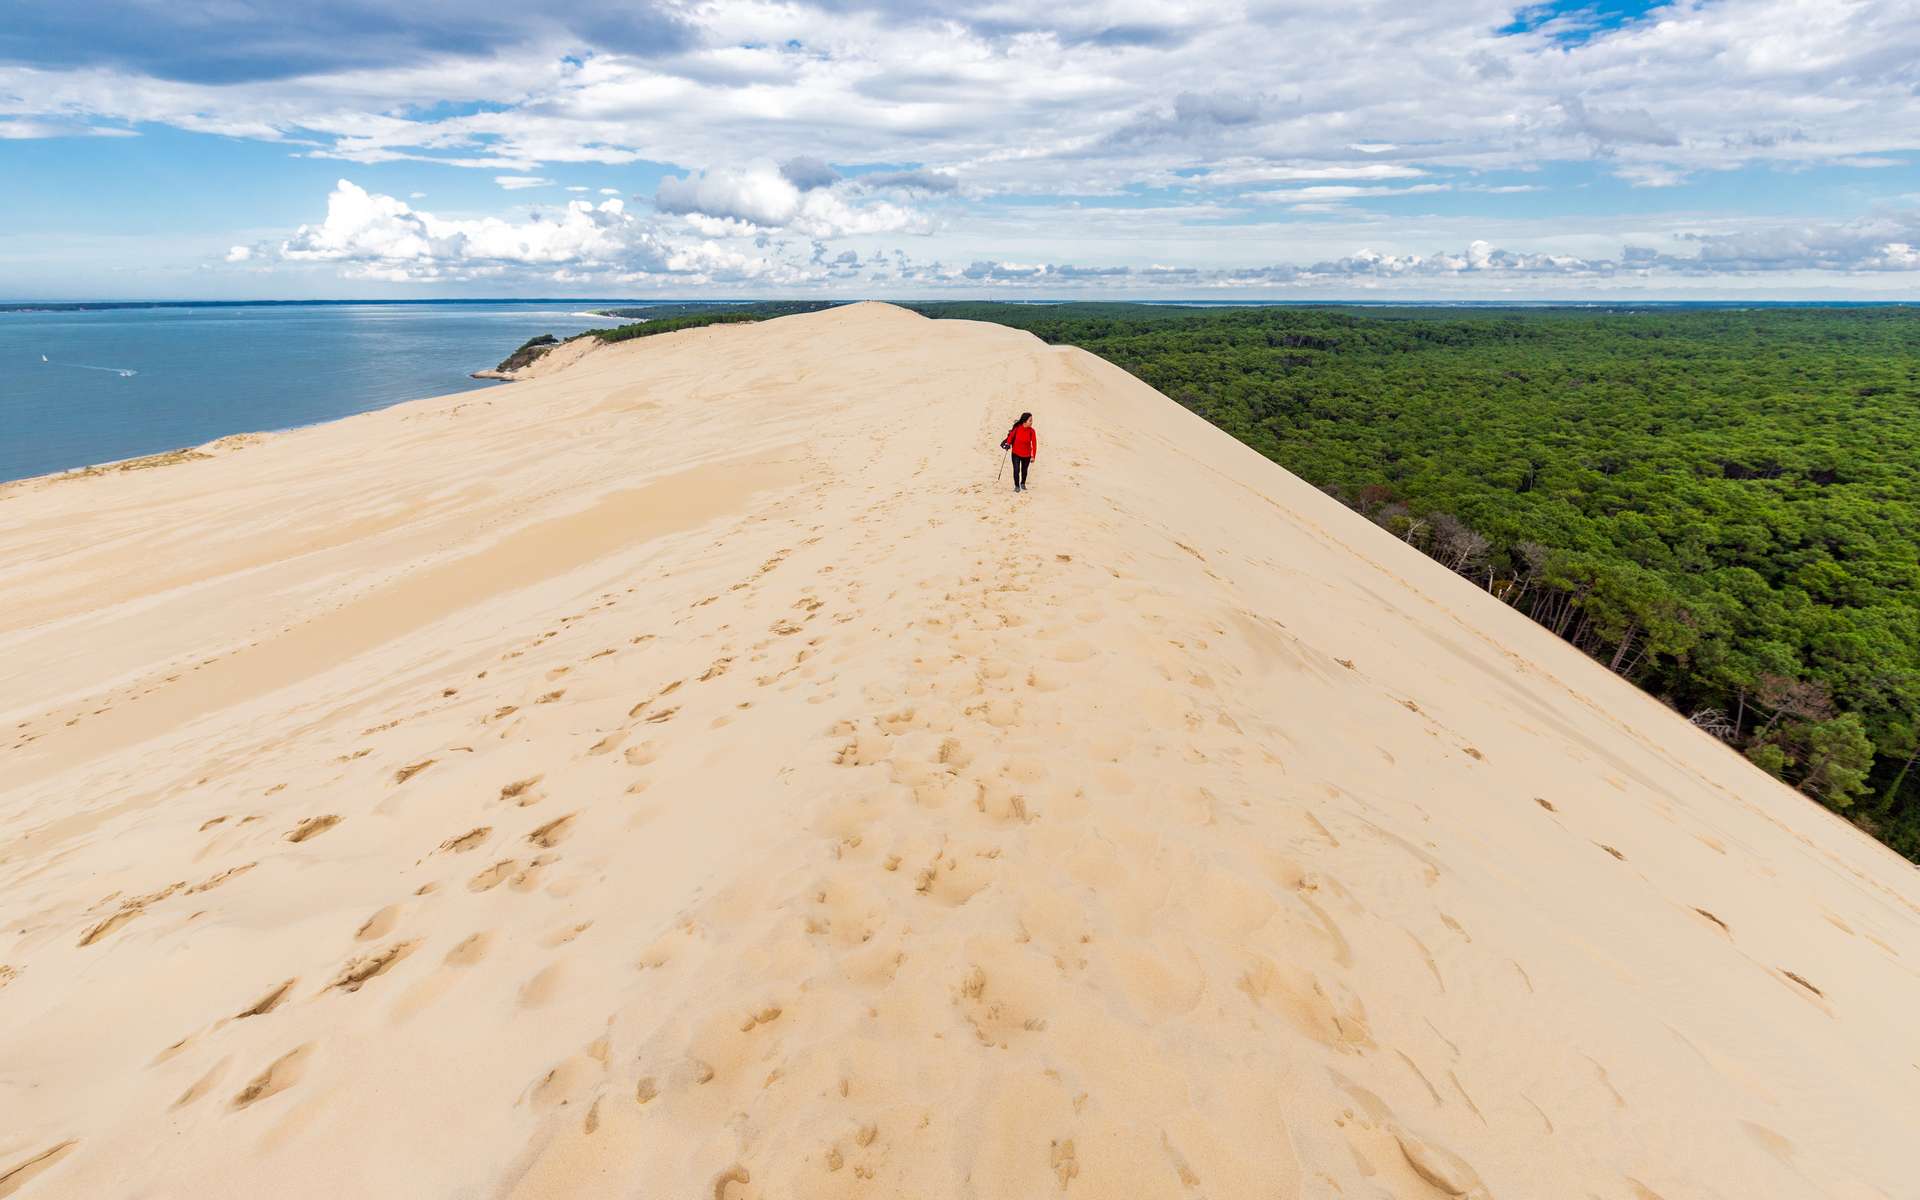 En Gironde, la Dune du Pilat a perdu près de 4 mètres en un an